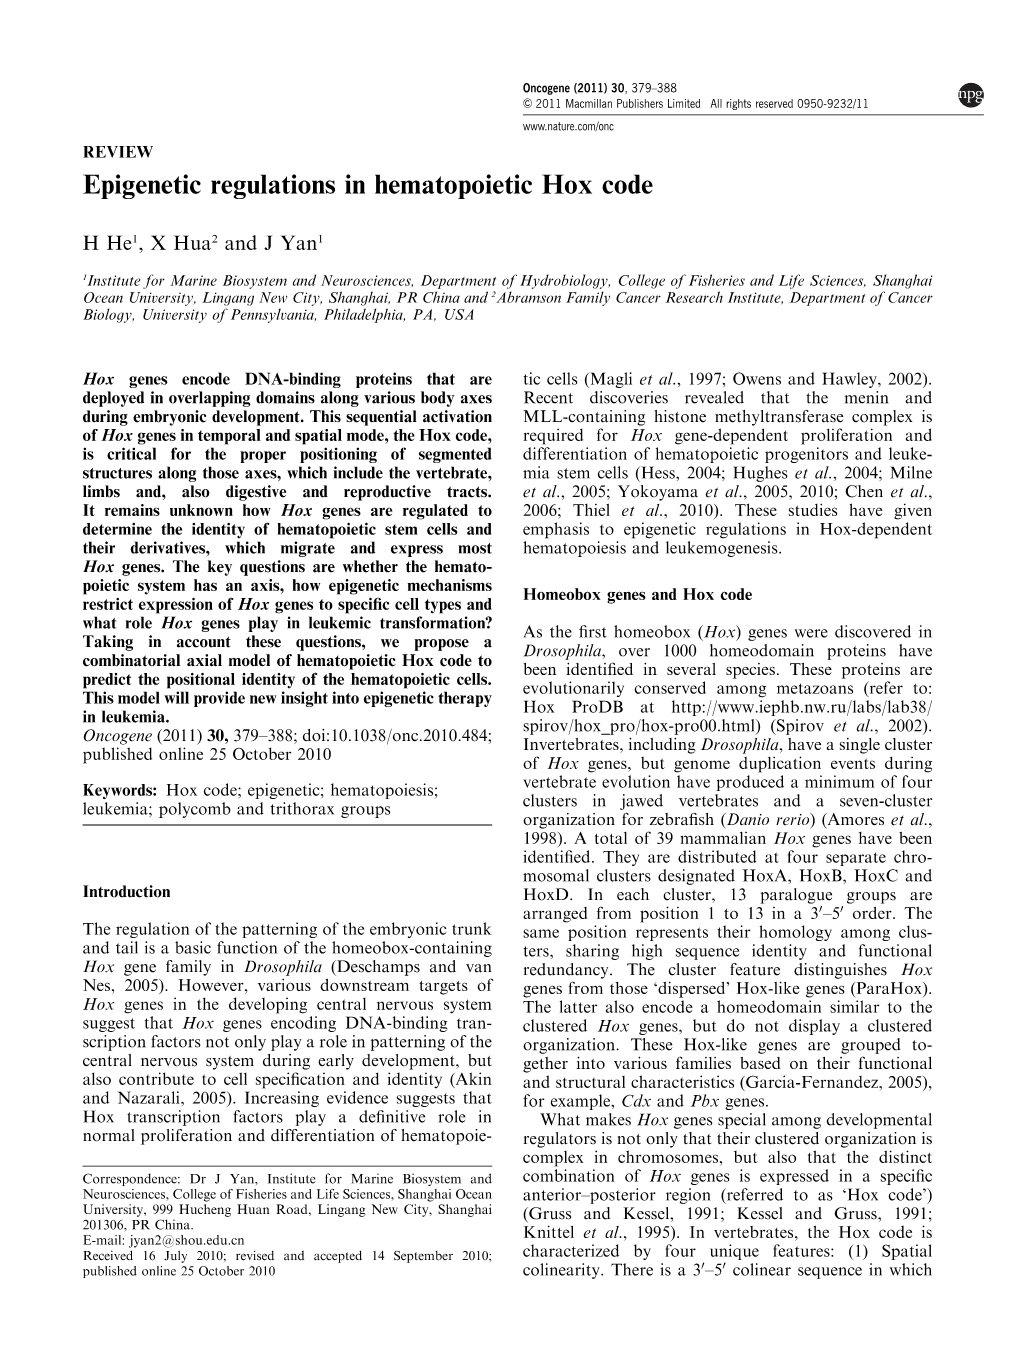 Epigenetic Regulations in Hematopoietic Hox Code